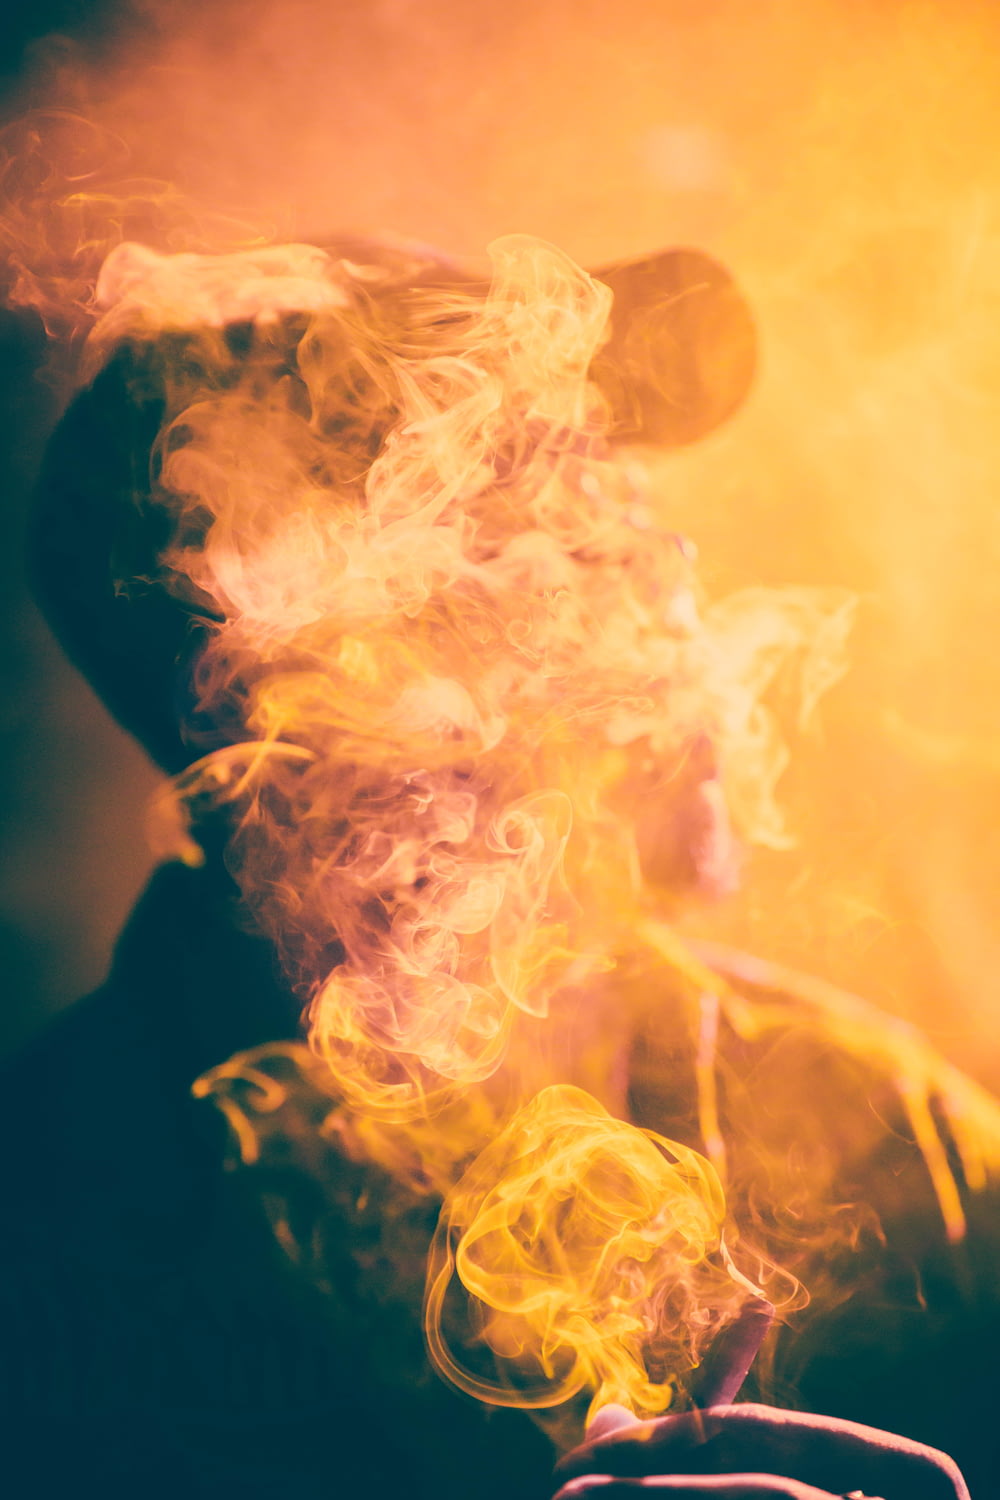 葉巻の煙に覆われた男のマクロ写真